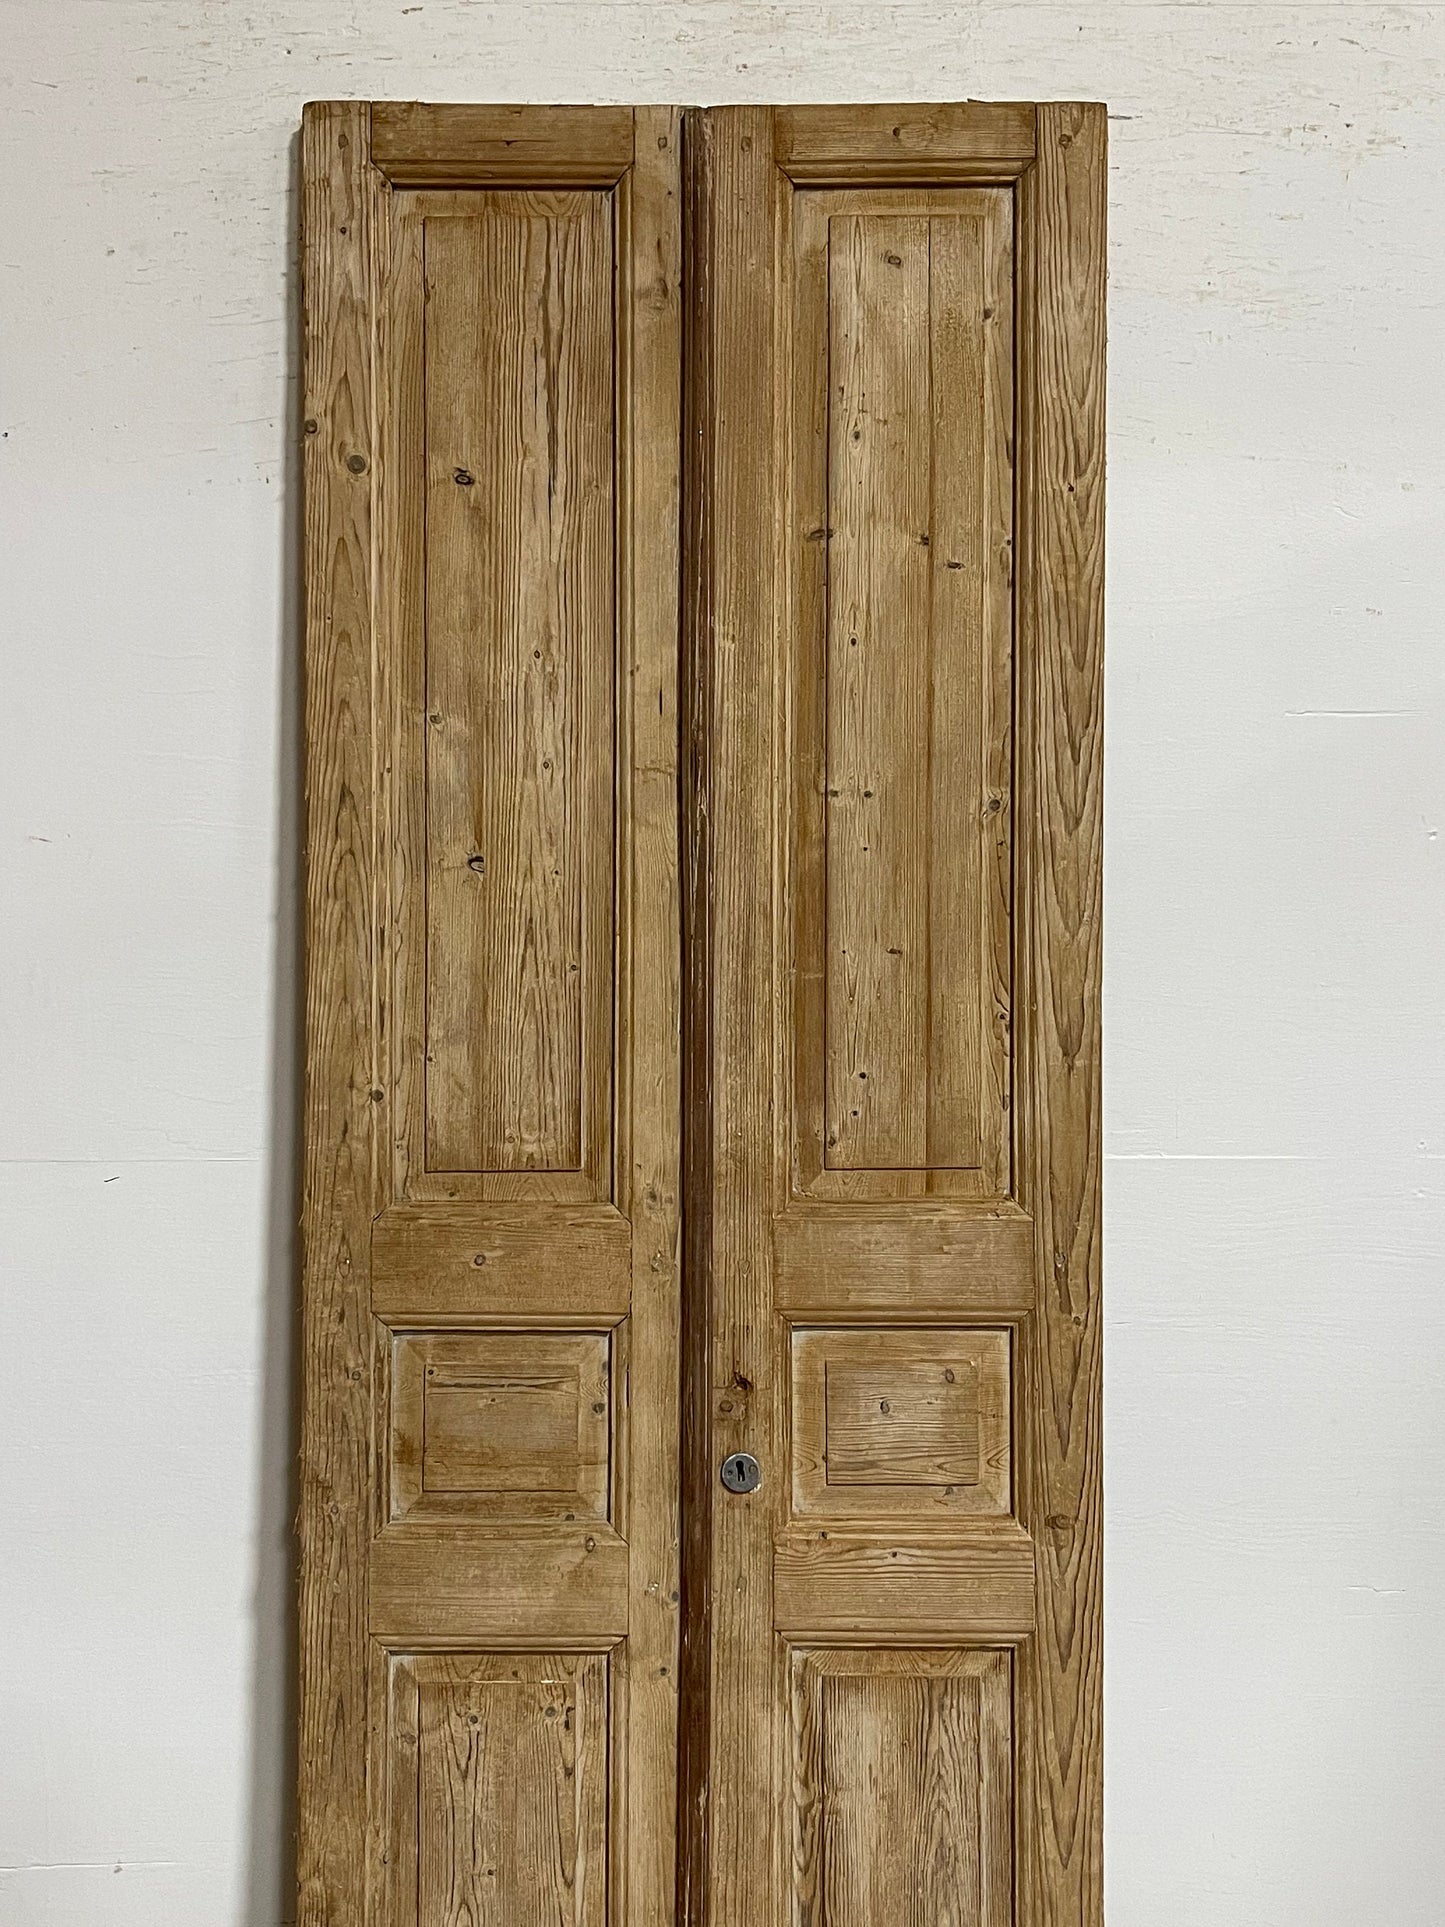 Antique French panel doors (91.5x32.75) I080s